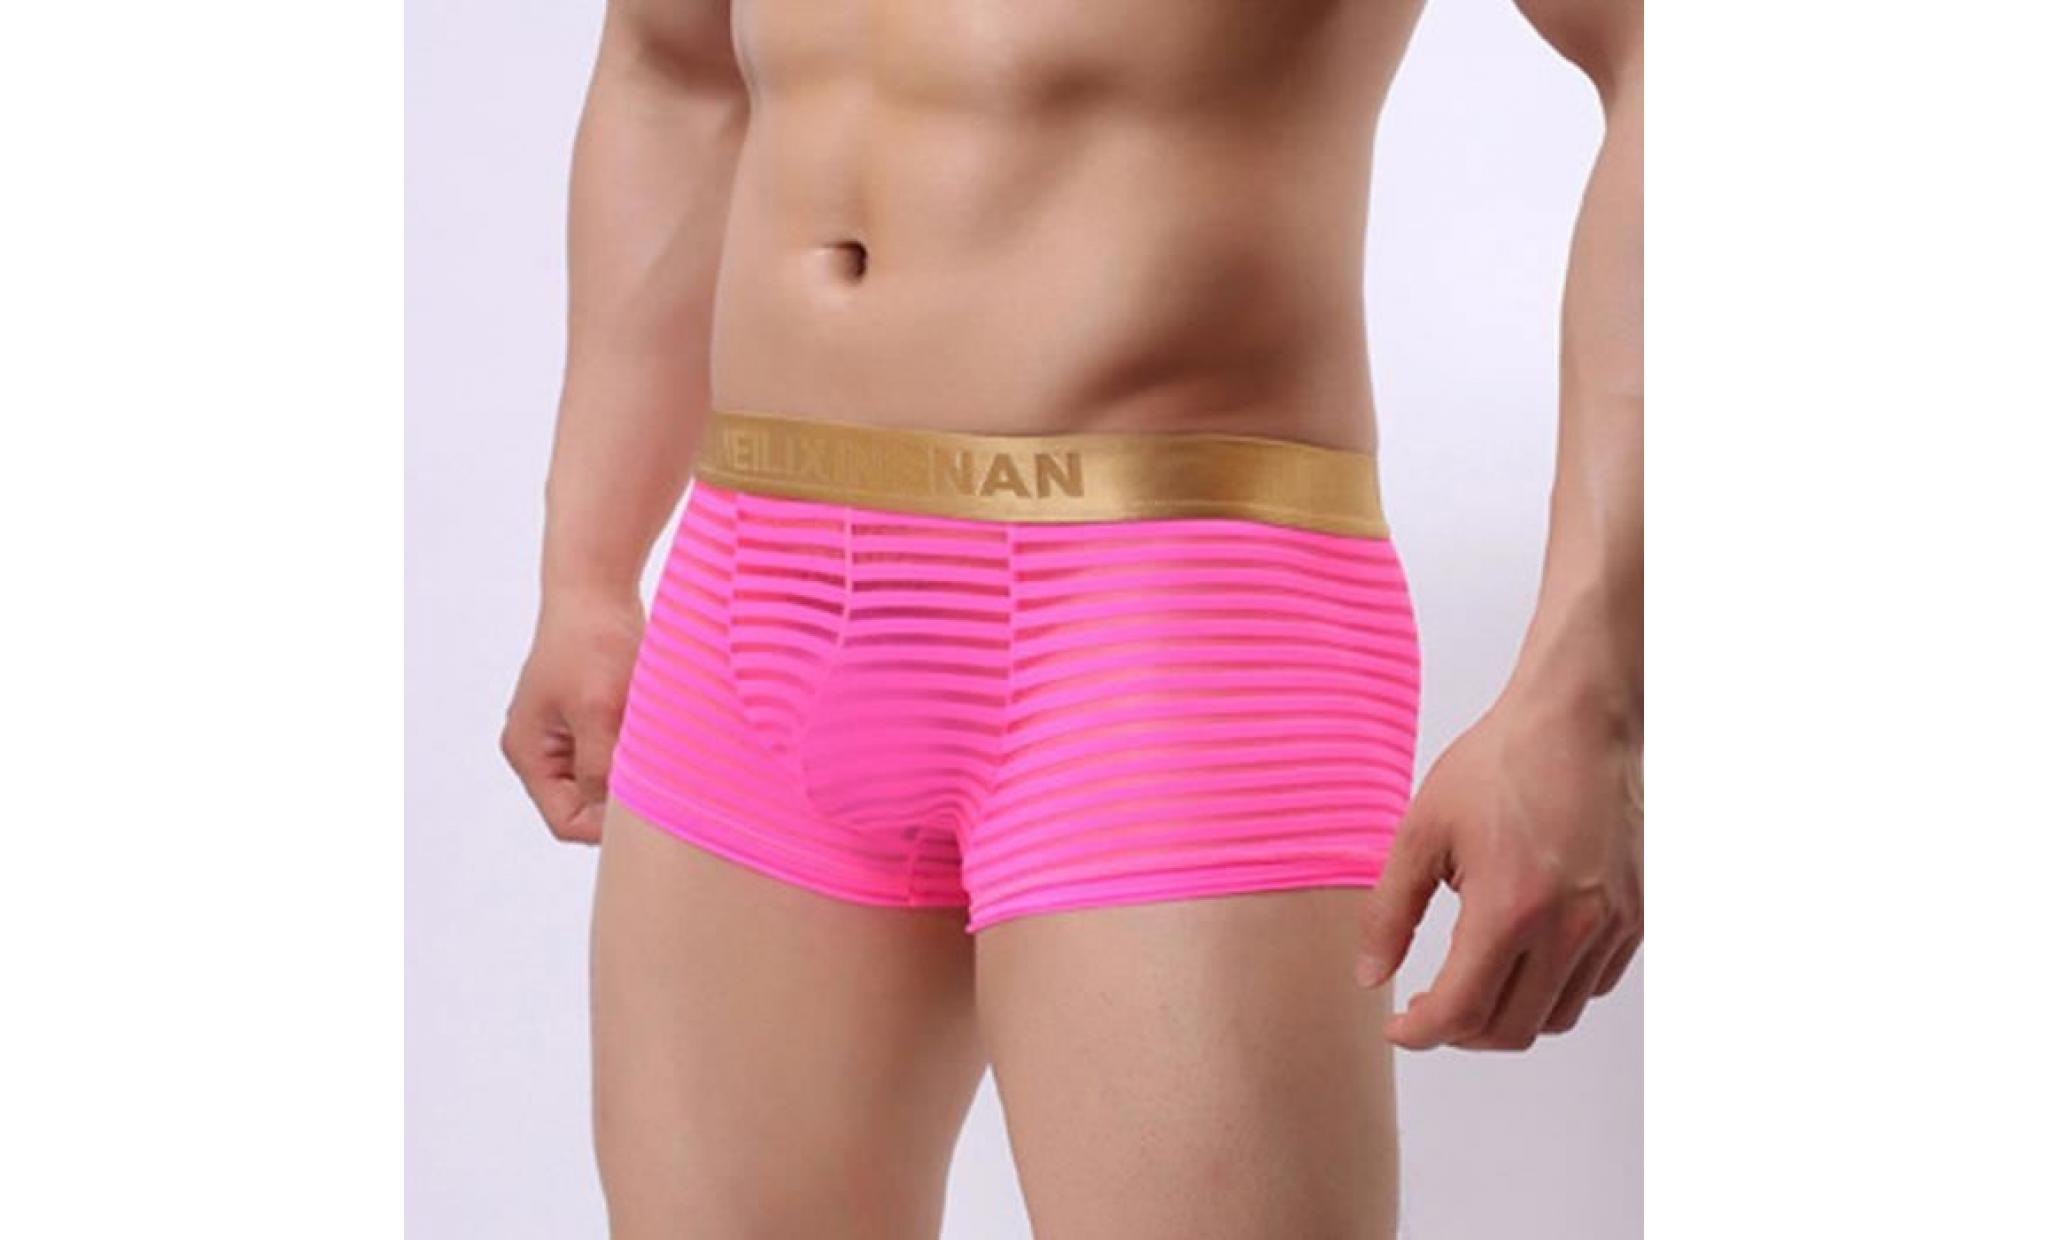 mode hommes striped transparent boxer briefs taille basse sexy shorts sous vêtements rose xxl